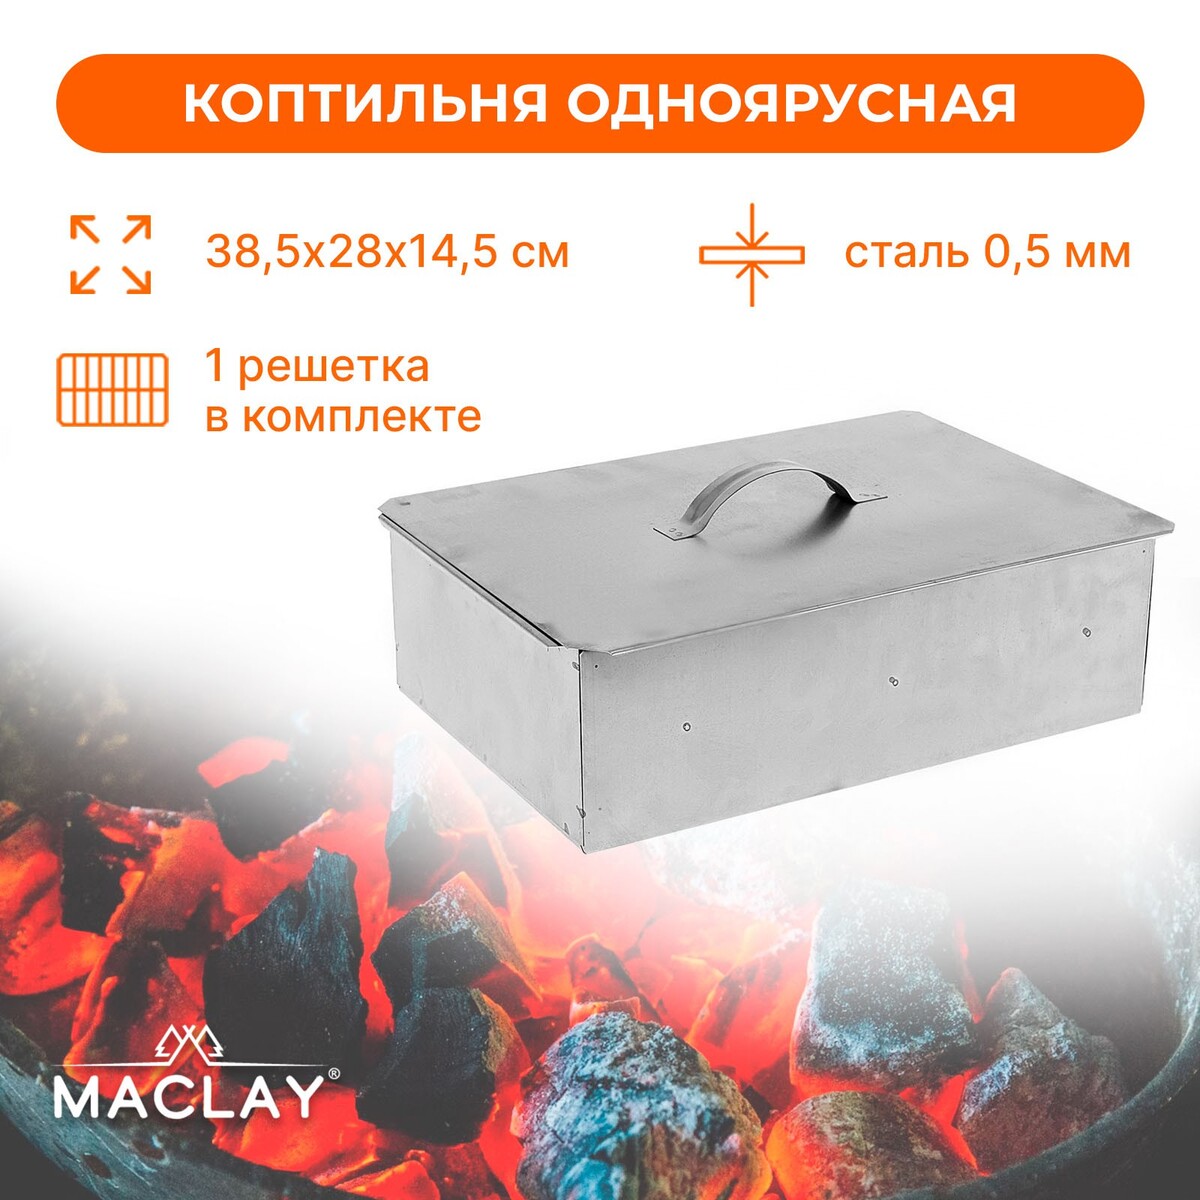 Коптильня maclay, одноярусная, 385х280х145 мм мангал коптильня maclay